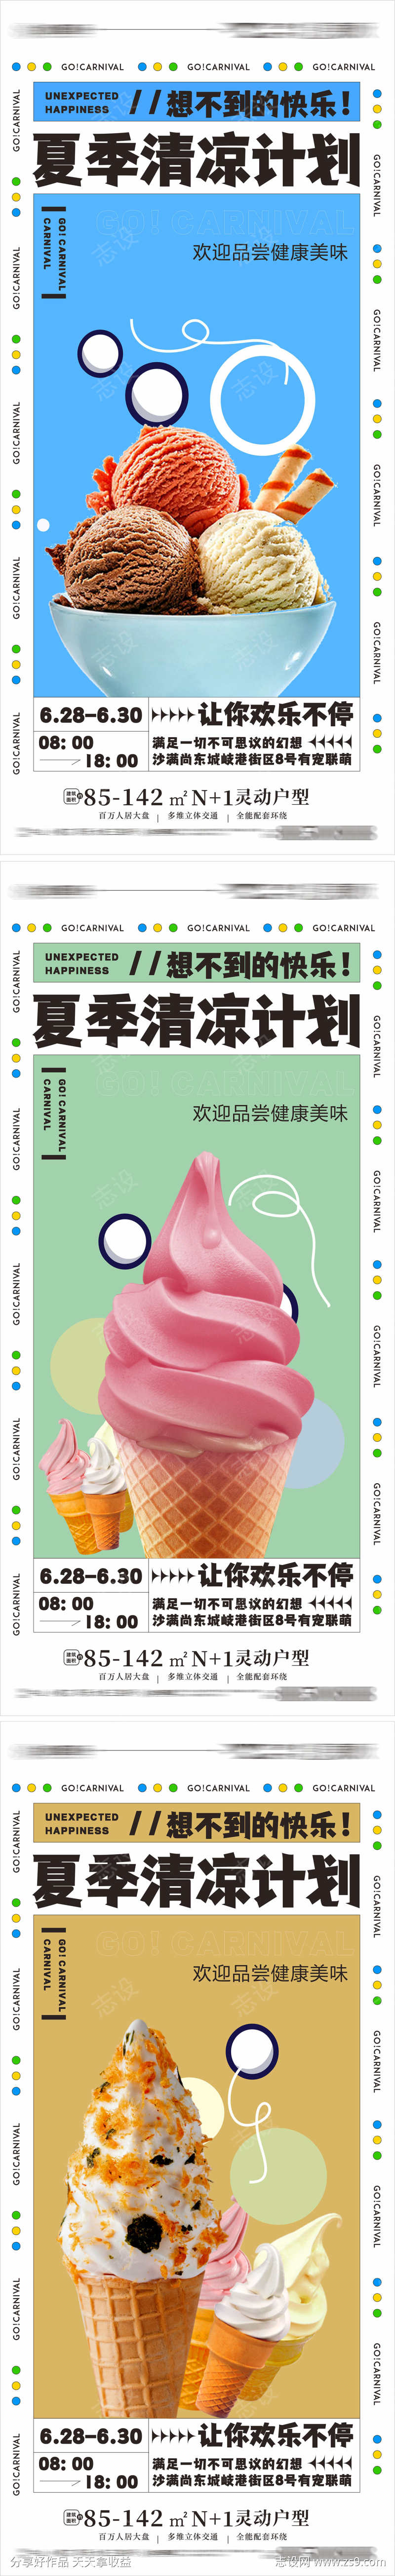 夏日冰爽 冰淇淋 清凉计划 雪糕